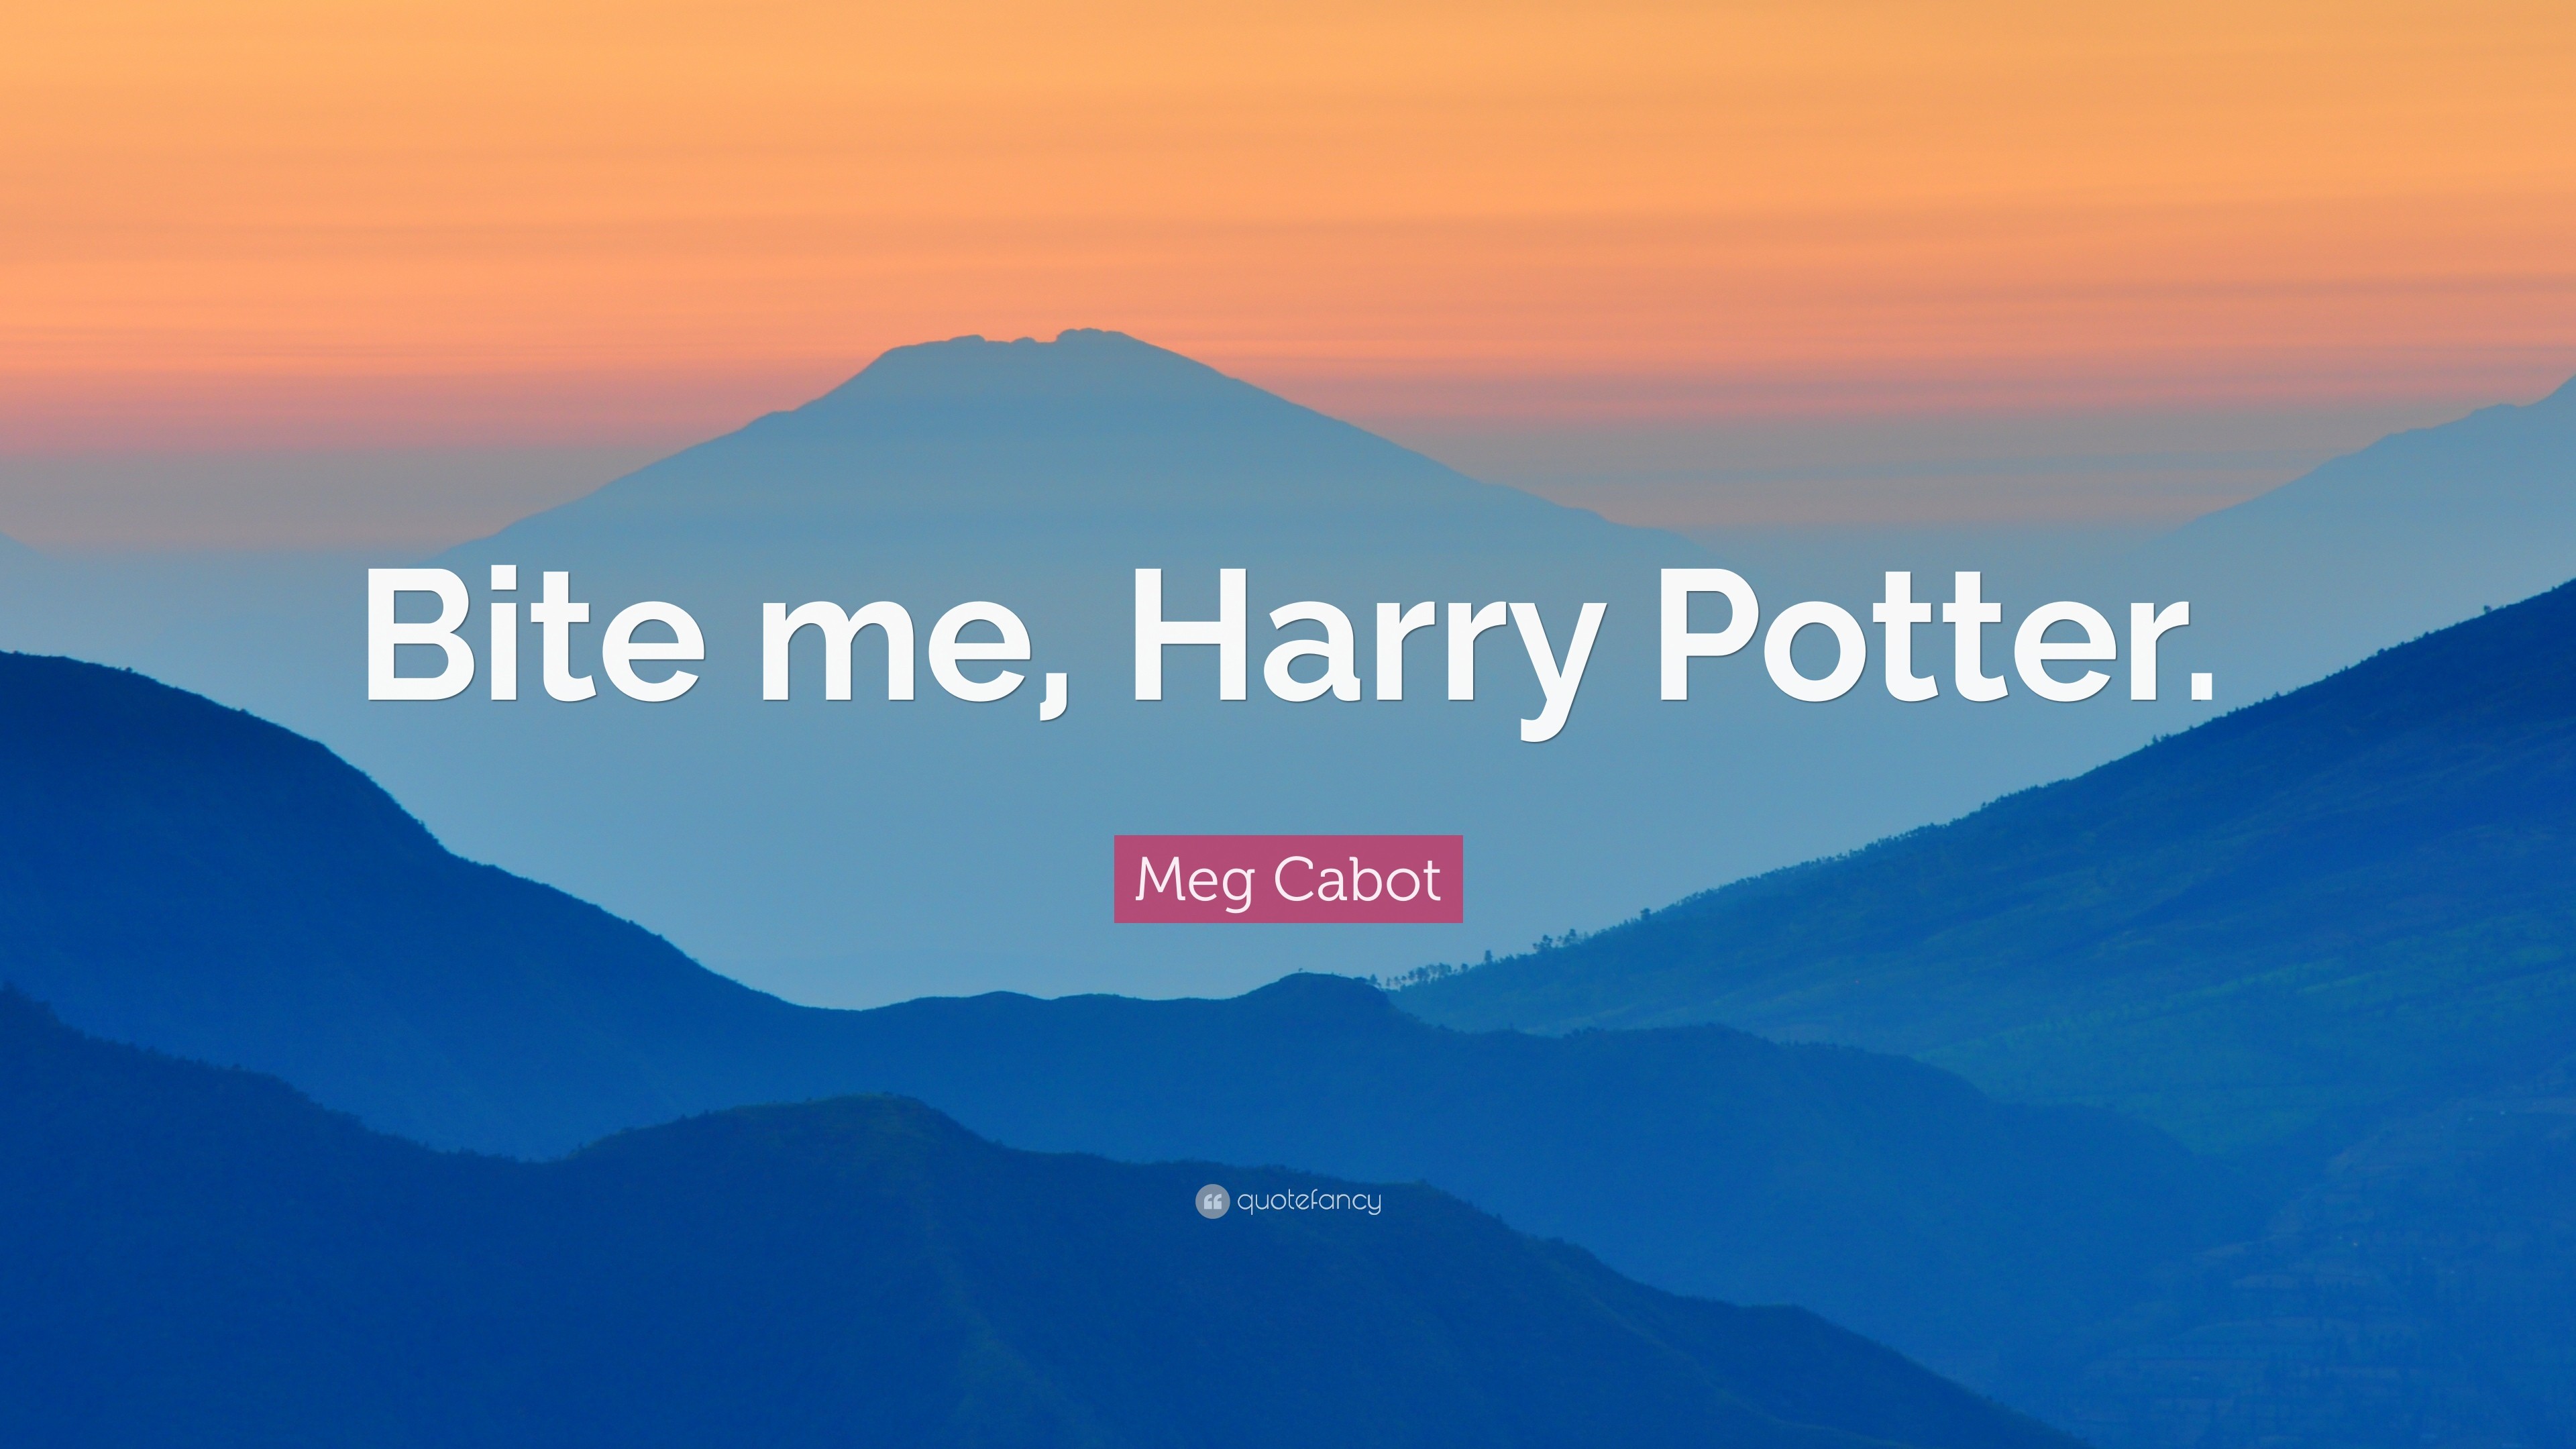 Meg Cabot Quote: “Bite me, Harry Potter.”